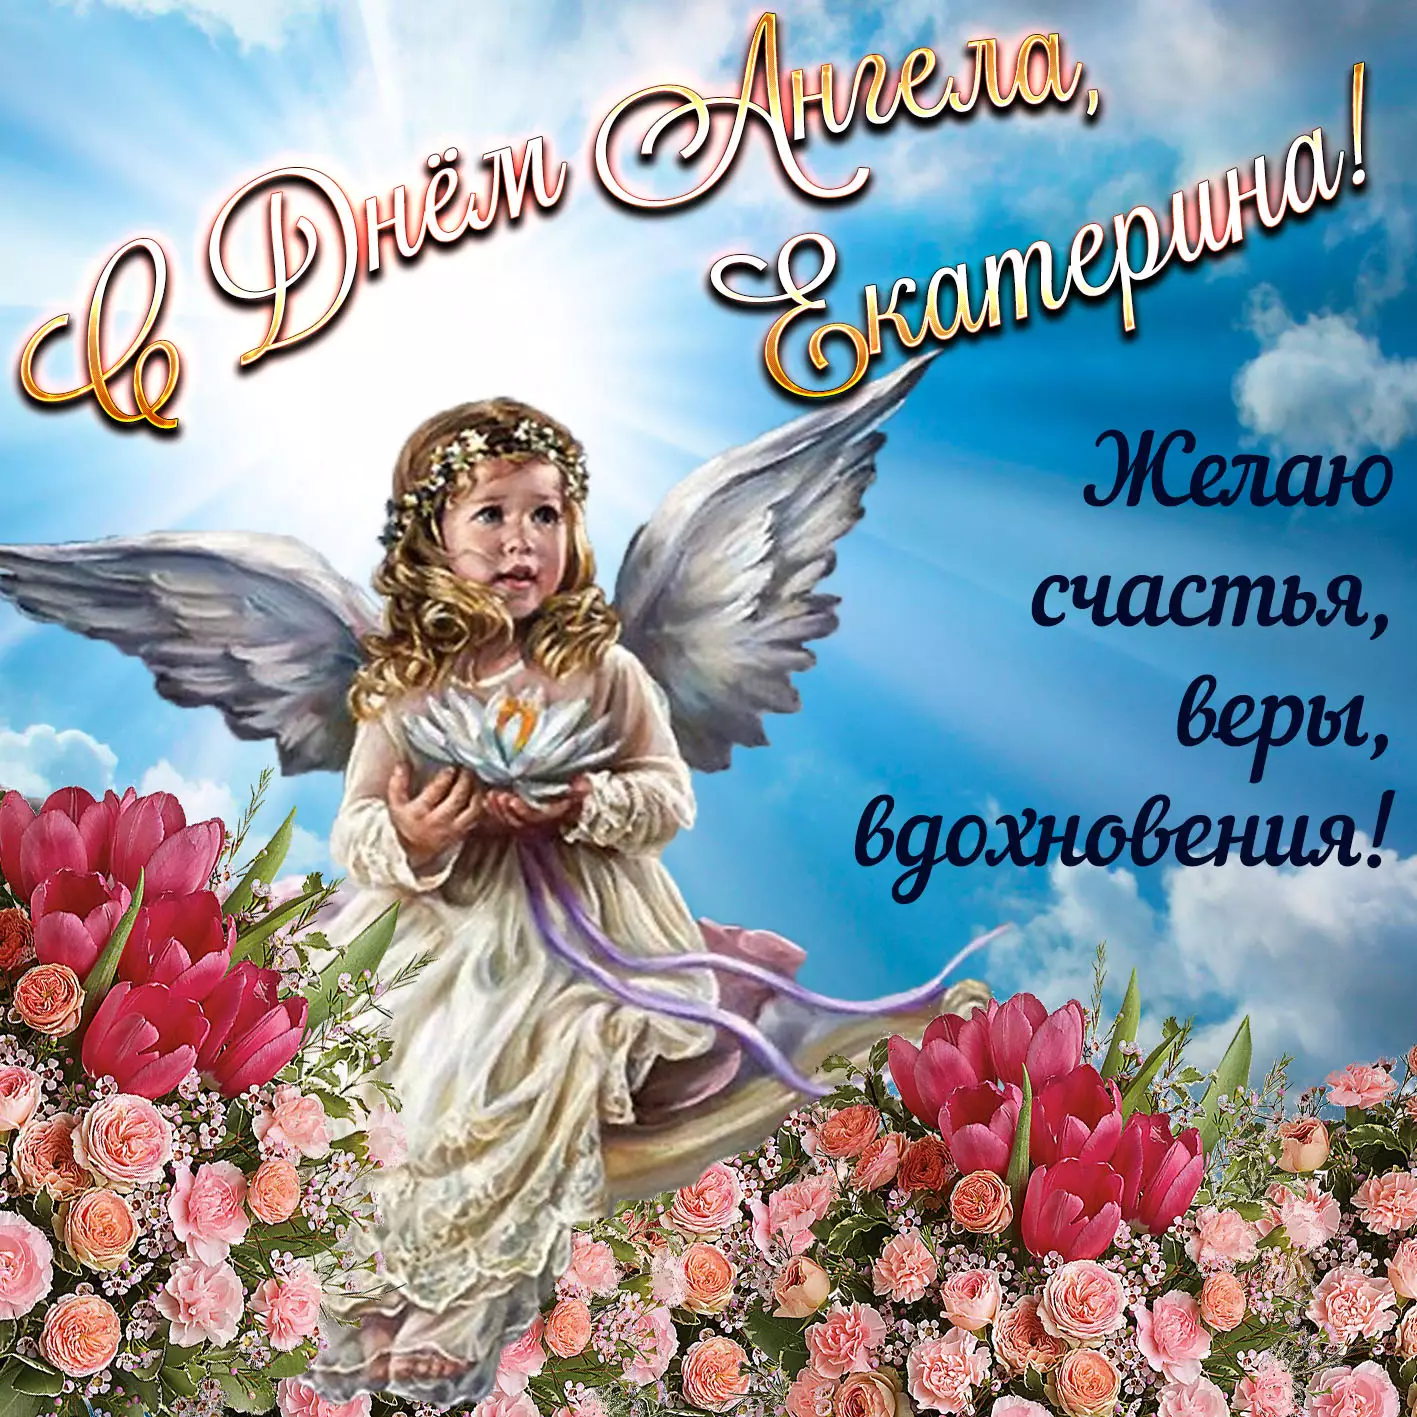 С днем ангела Екатерины 2021! Самые красивые открытки и поздравления